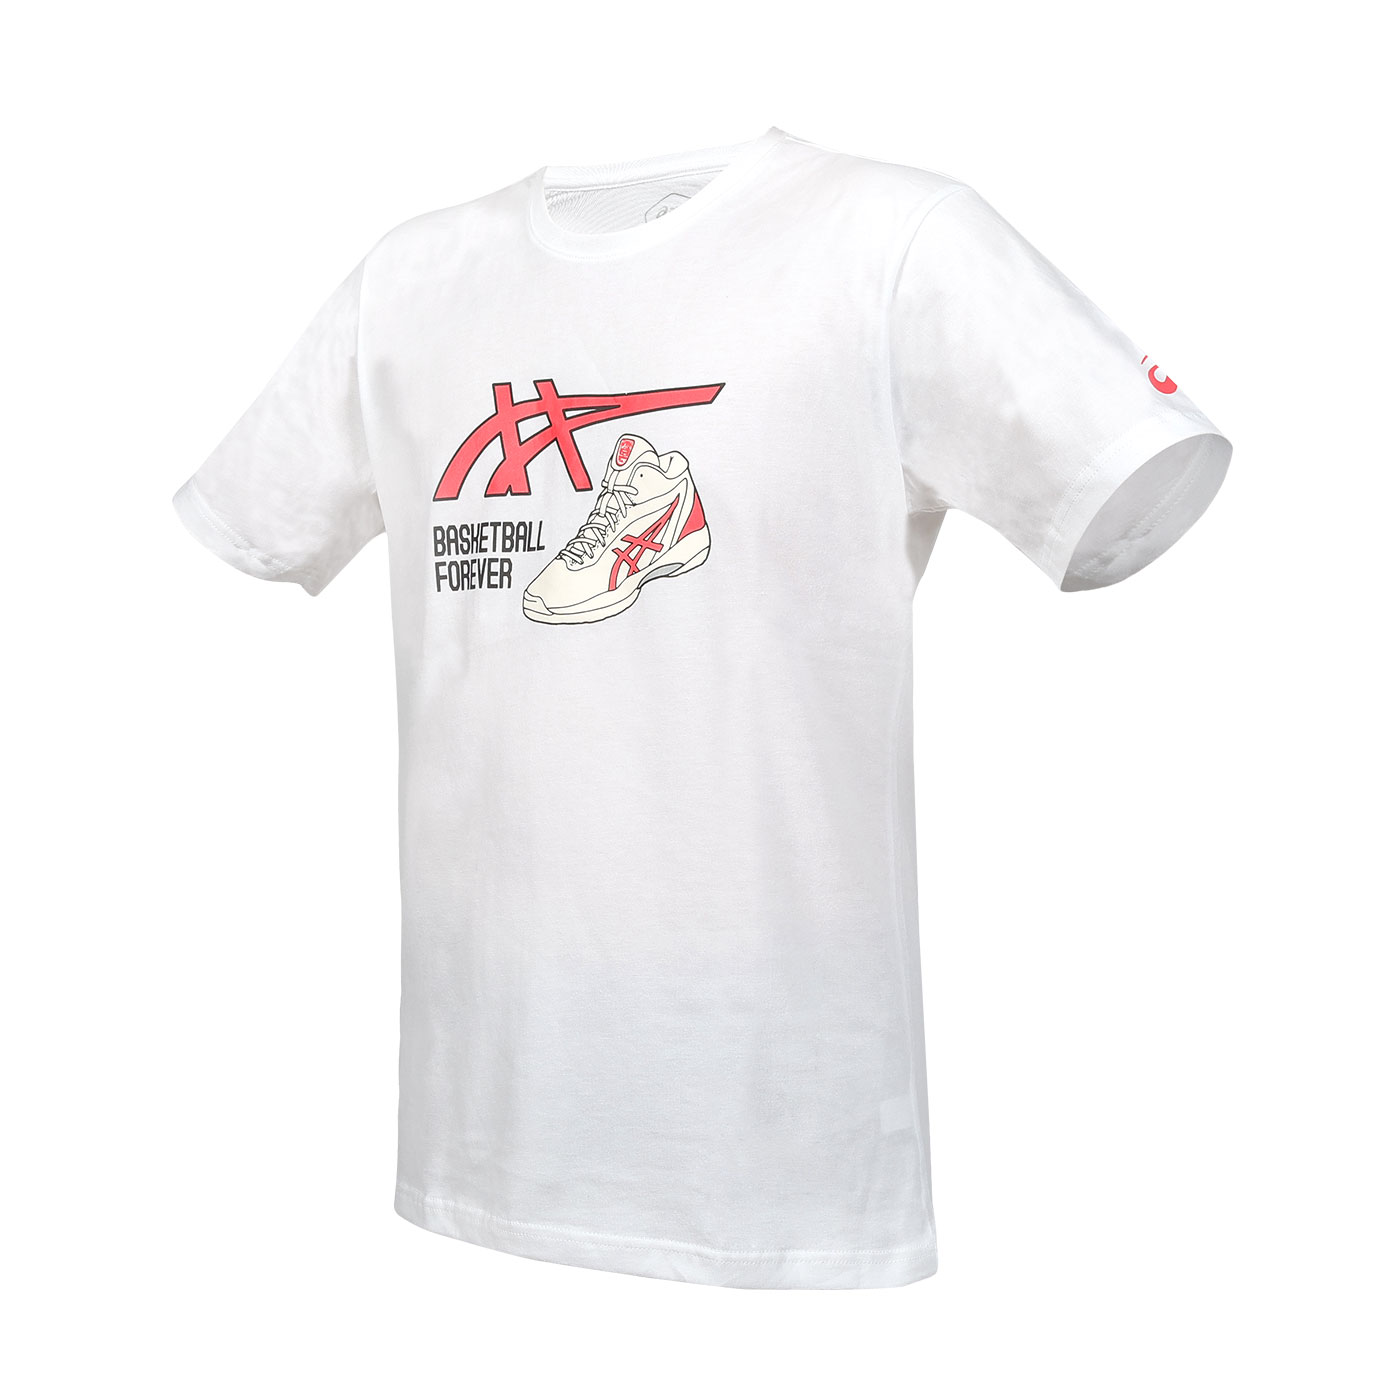 ASICS 運動短袖T恤  2063A398-100 - 白紅黑